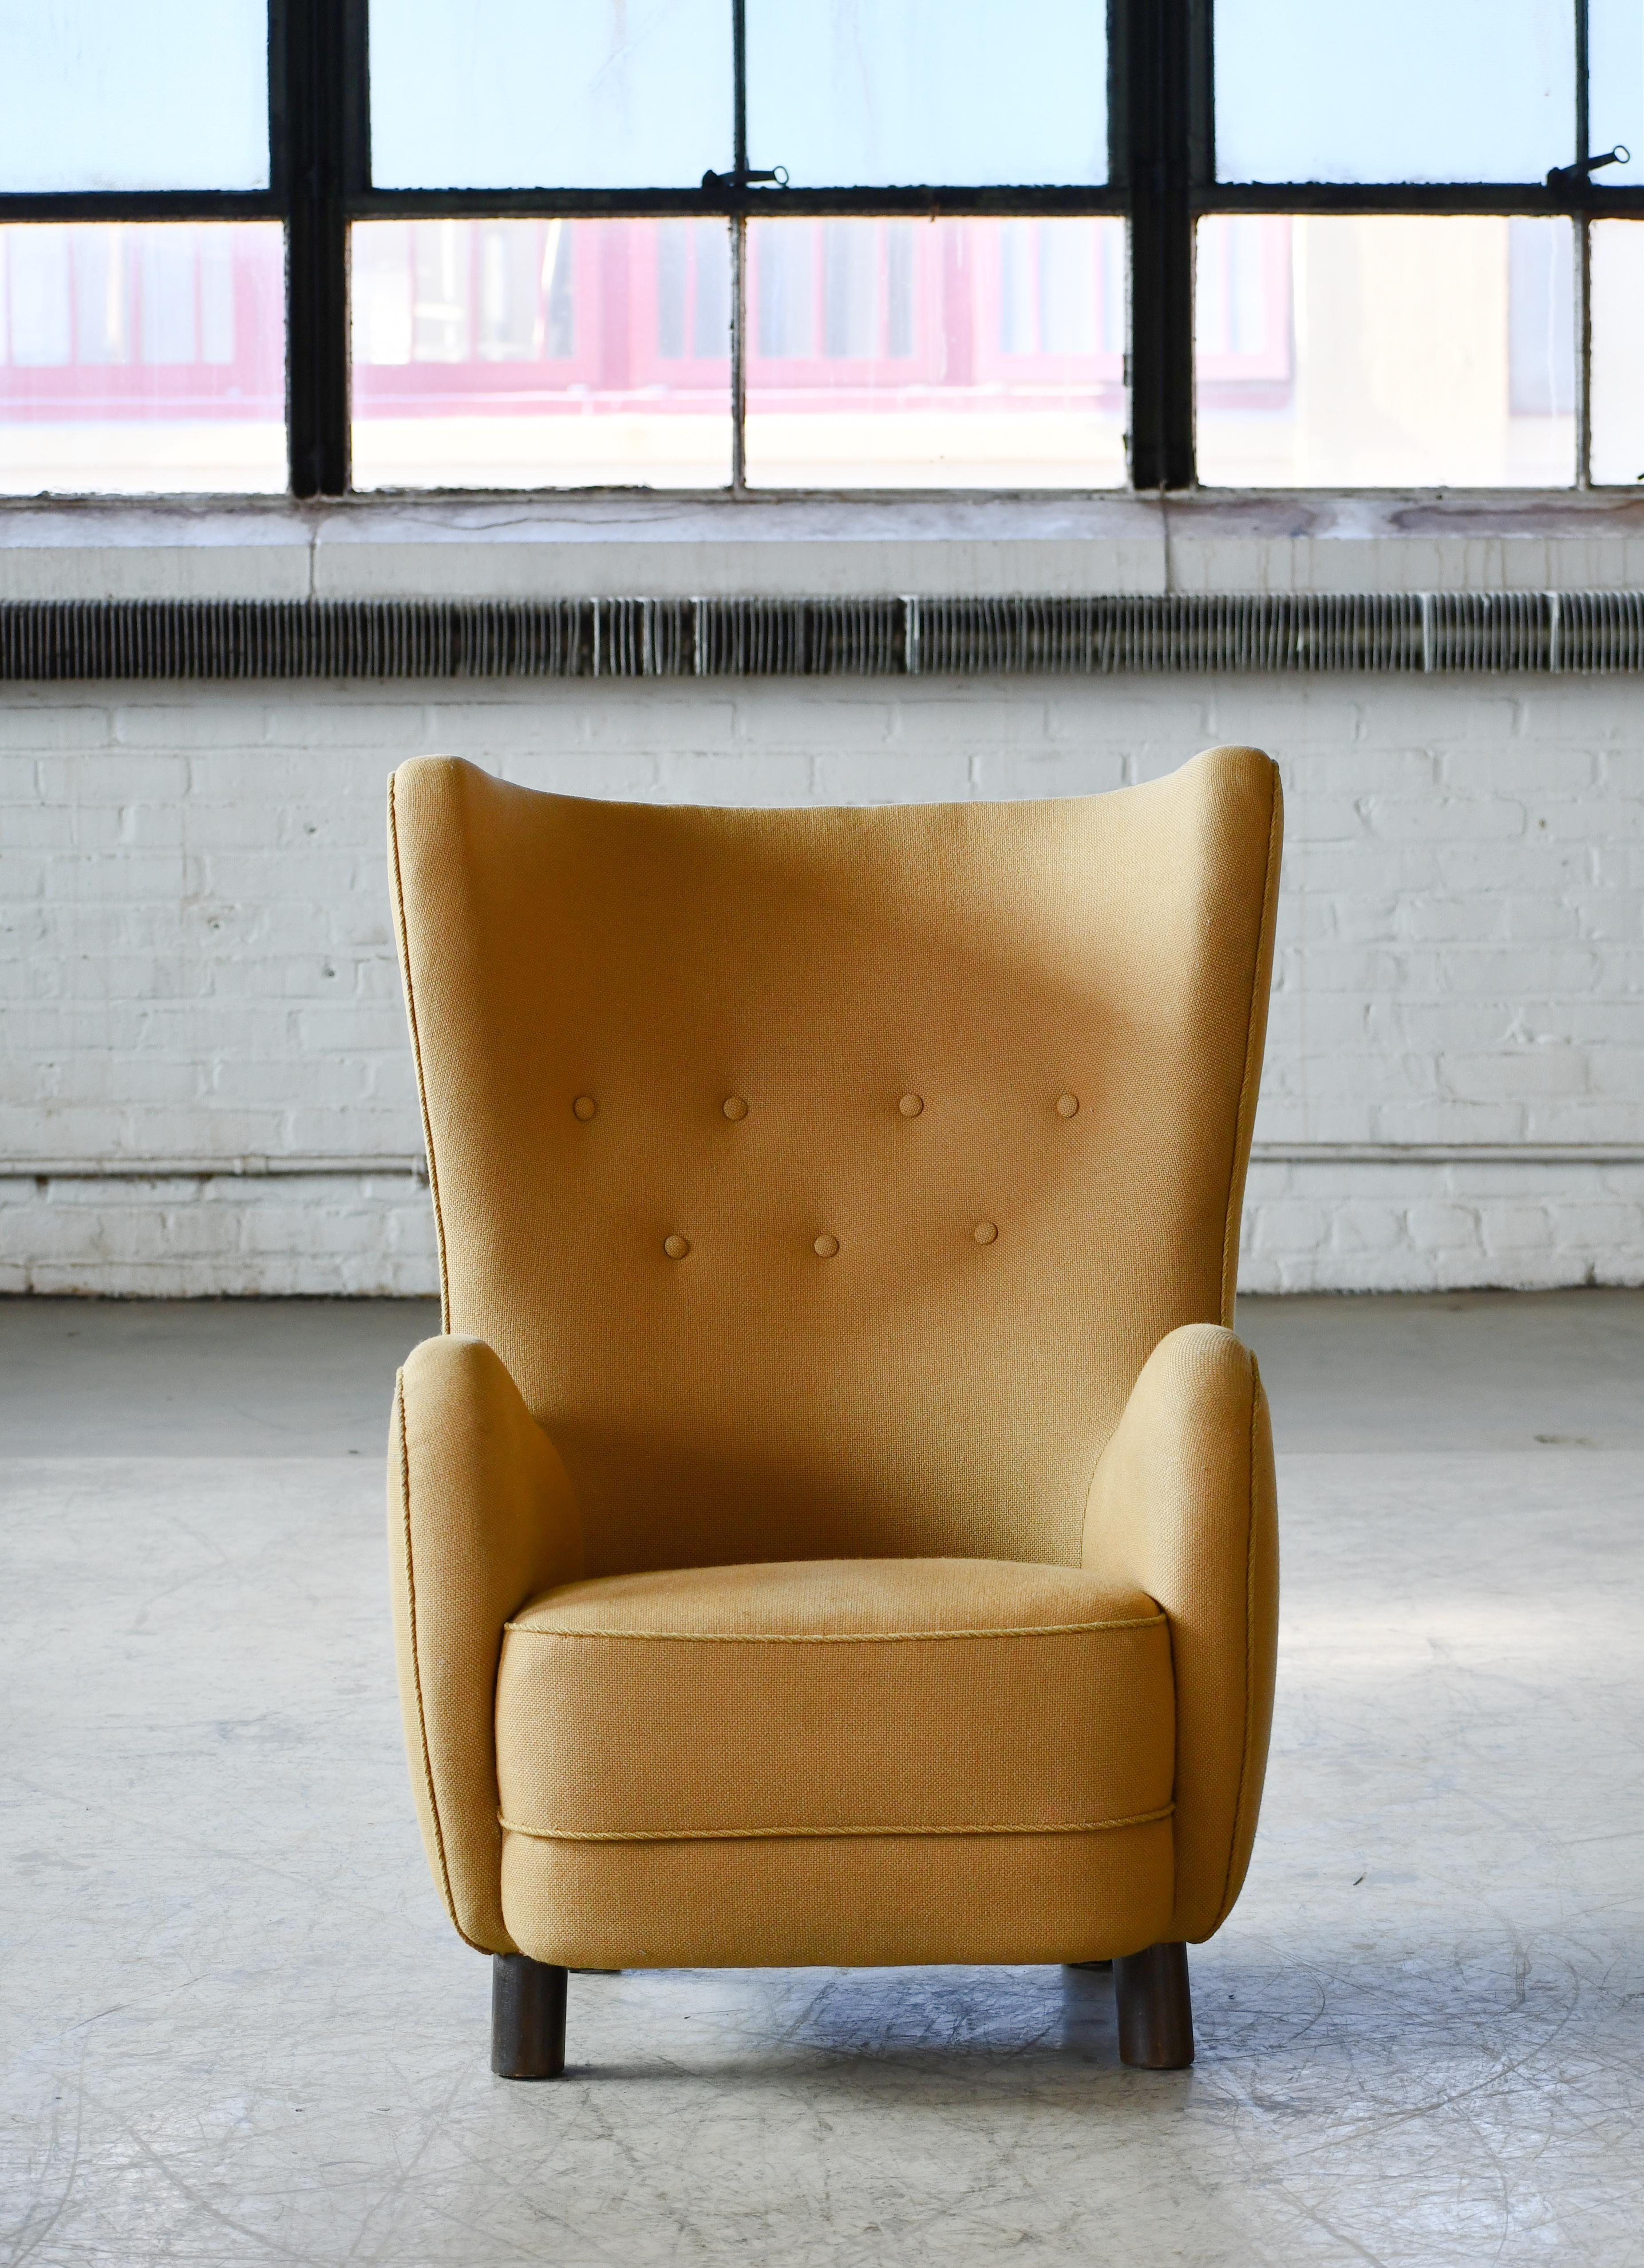 Schöner Flemming Lassen zugeschriebener Sessel mit hoher Rückenlehne aus der Zeit um 1940. Dieser ikonische Loungesessel ist wahrscheinlich einer der perfektesten Hochlehner, die je entworfen wurden. Mit seiner ultra-eleganten, sinnlichen Form und